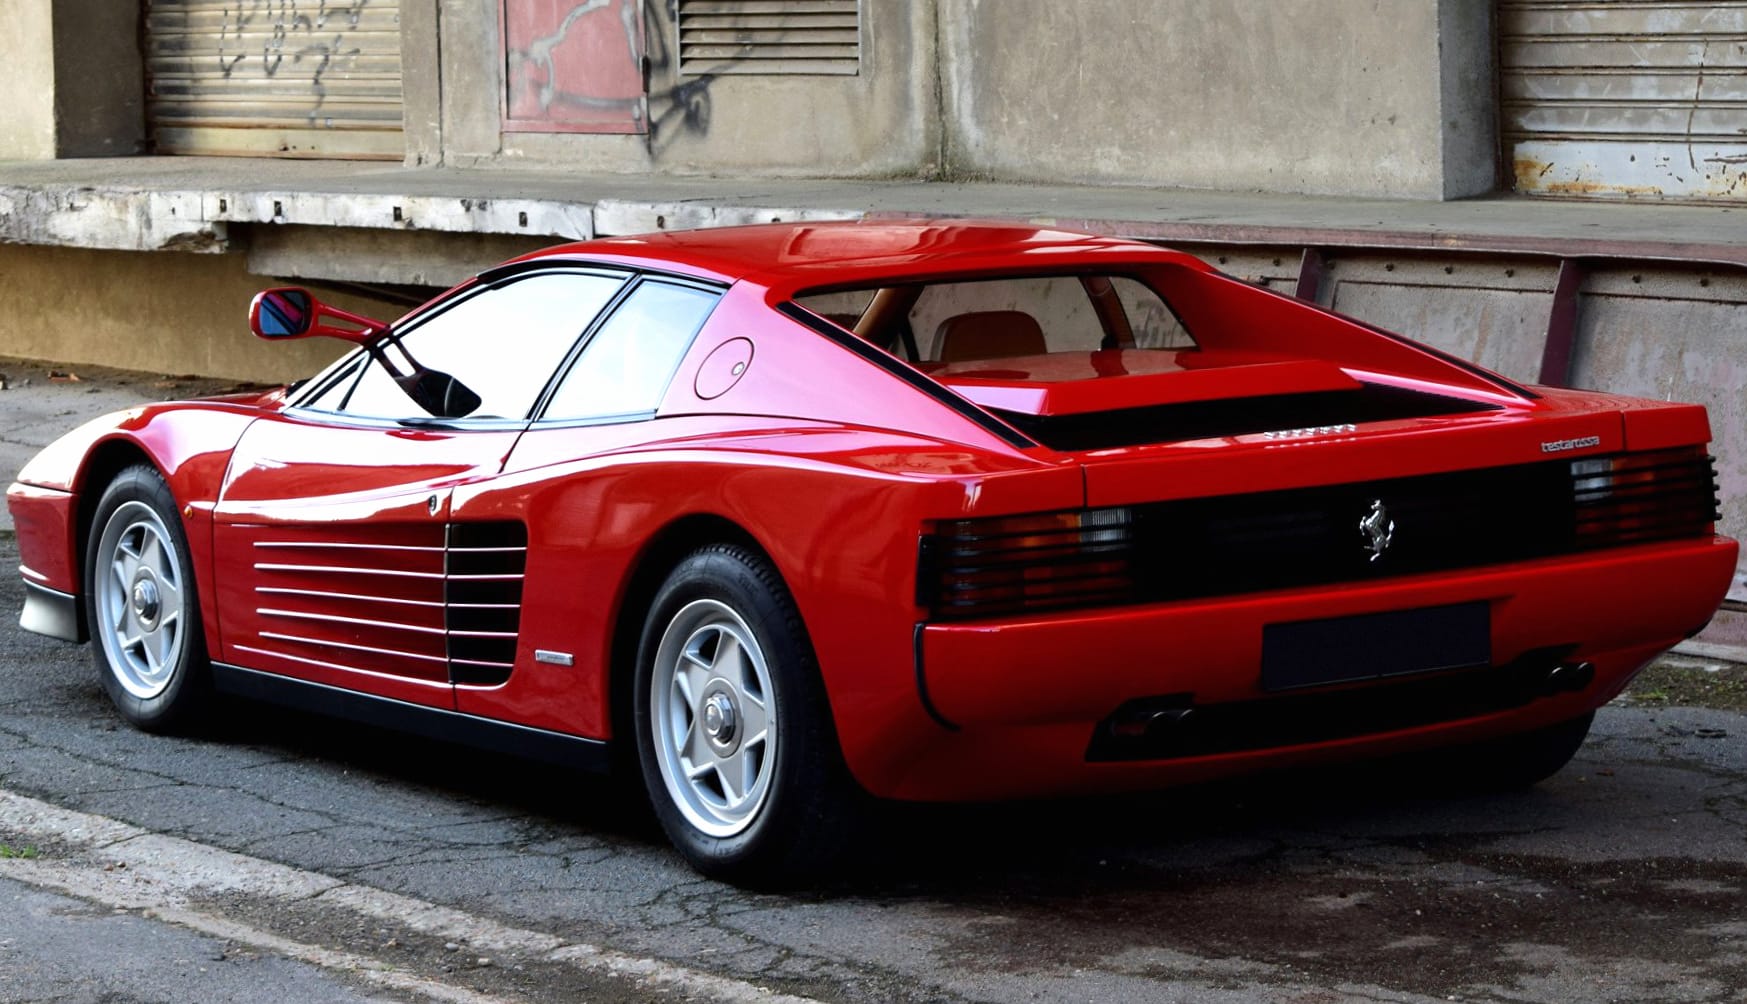 Ferrari Testarossa at 1152 x 864 size wallpapers HD quality